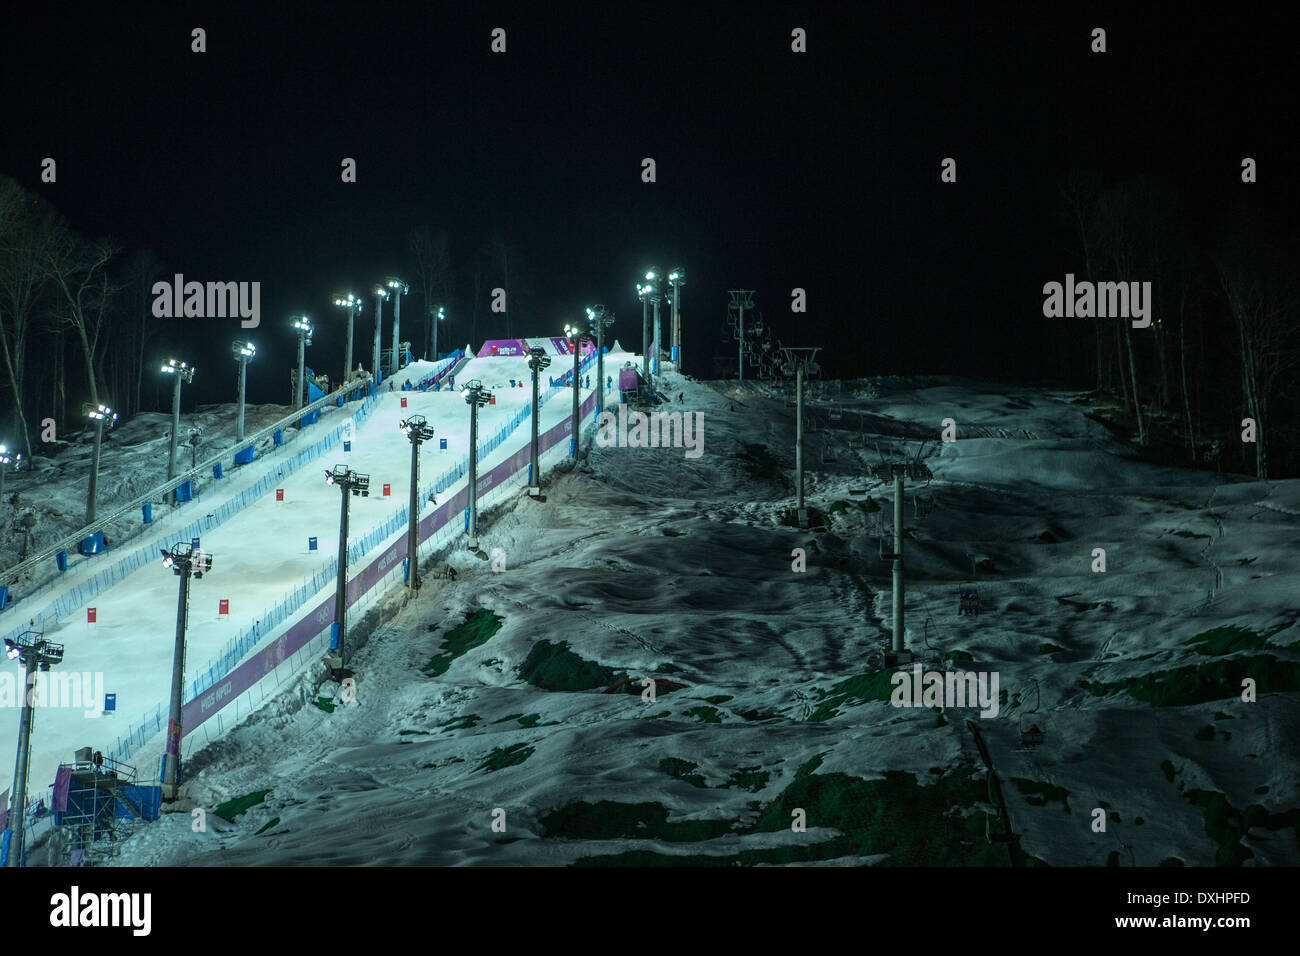 Lieu de la compétition de bosses en ski acrobatique aux Jeux Olympiques d'hiver de Sotchi en 2014, Banque D'Images